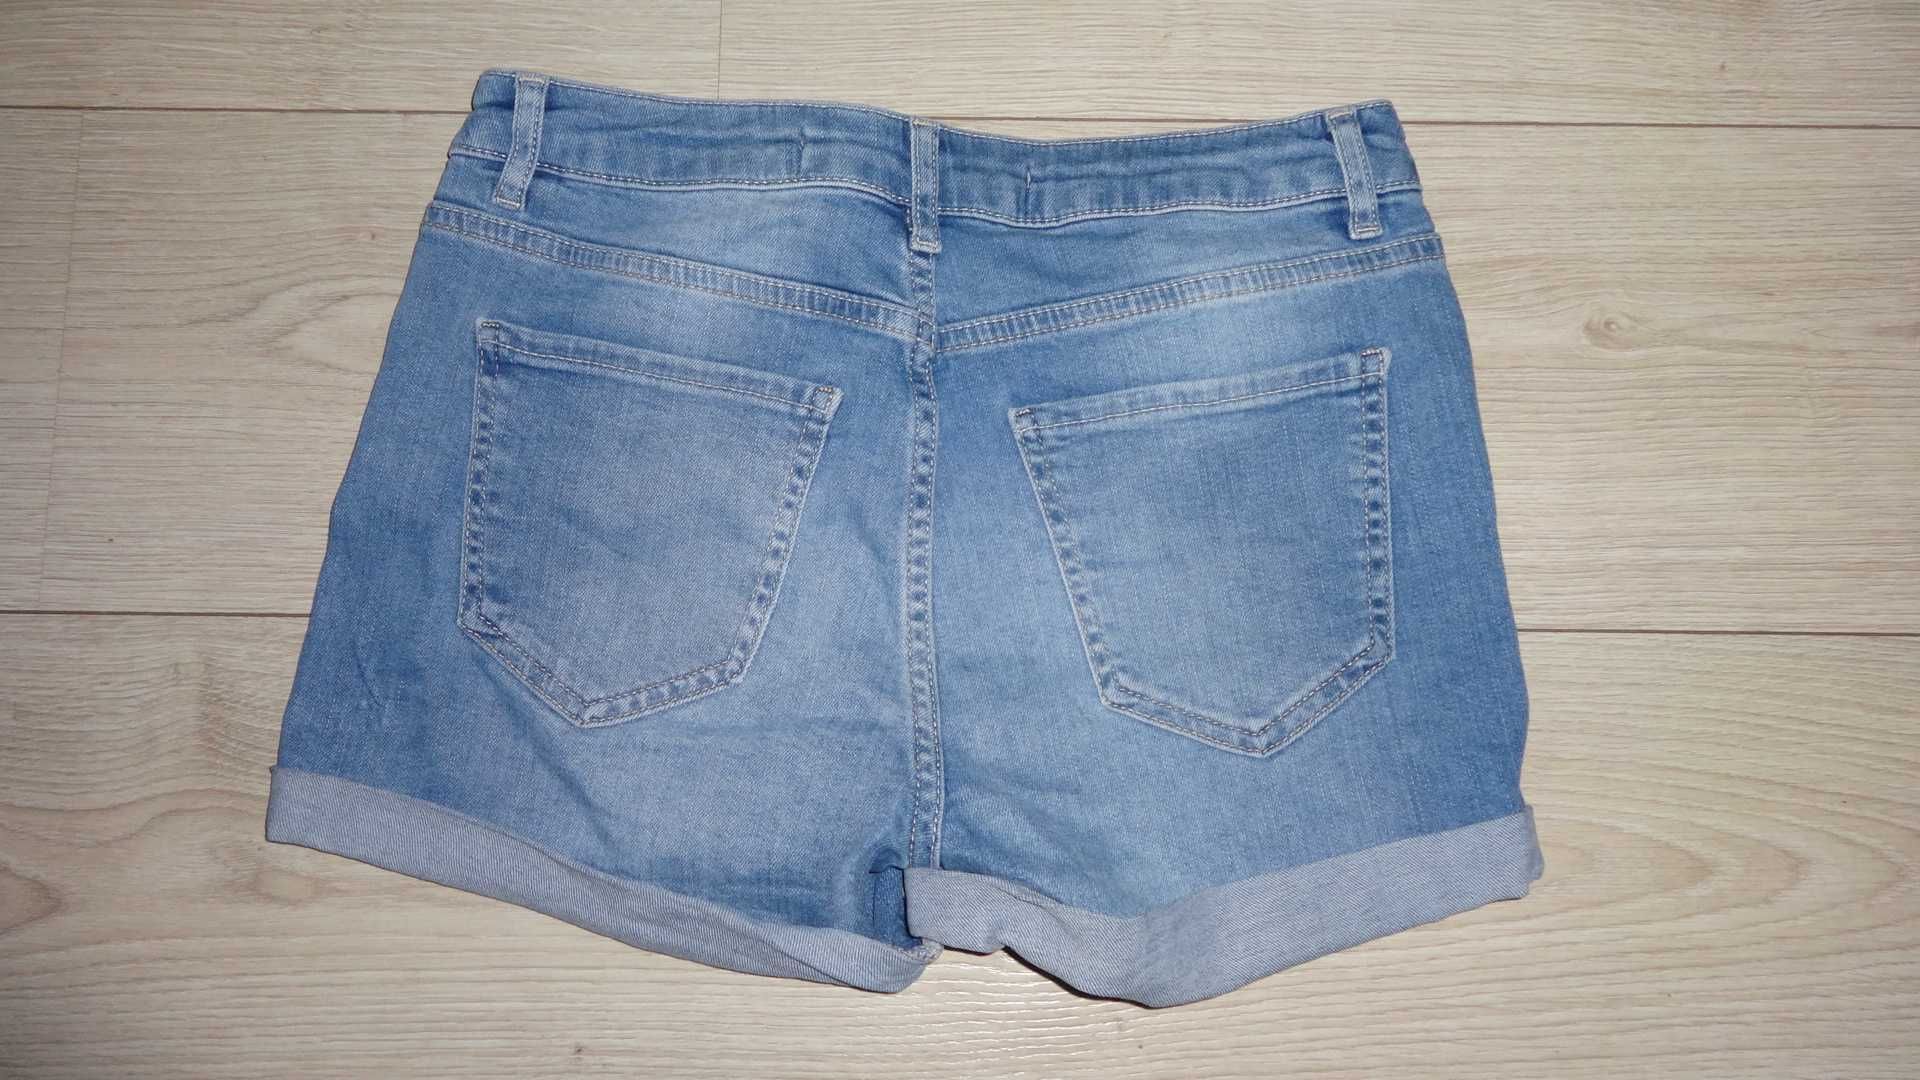 Шорты джинсовые LC WAIKIKI size: 26 все на ФОТО замеры